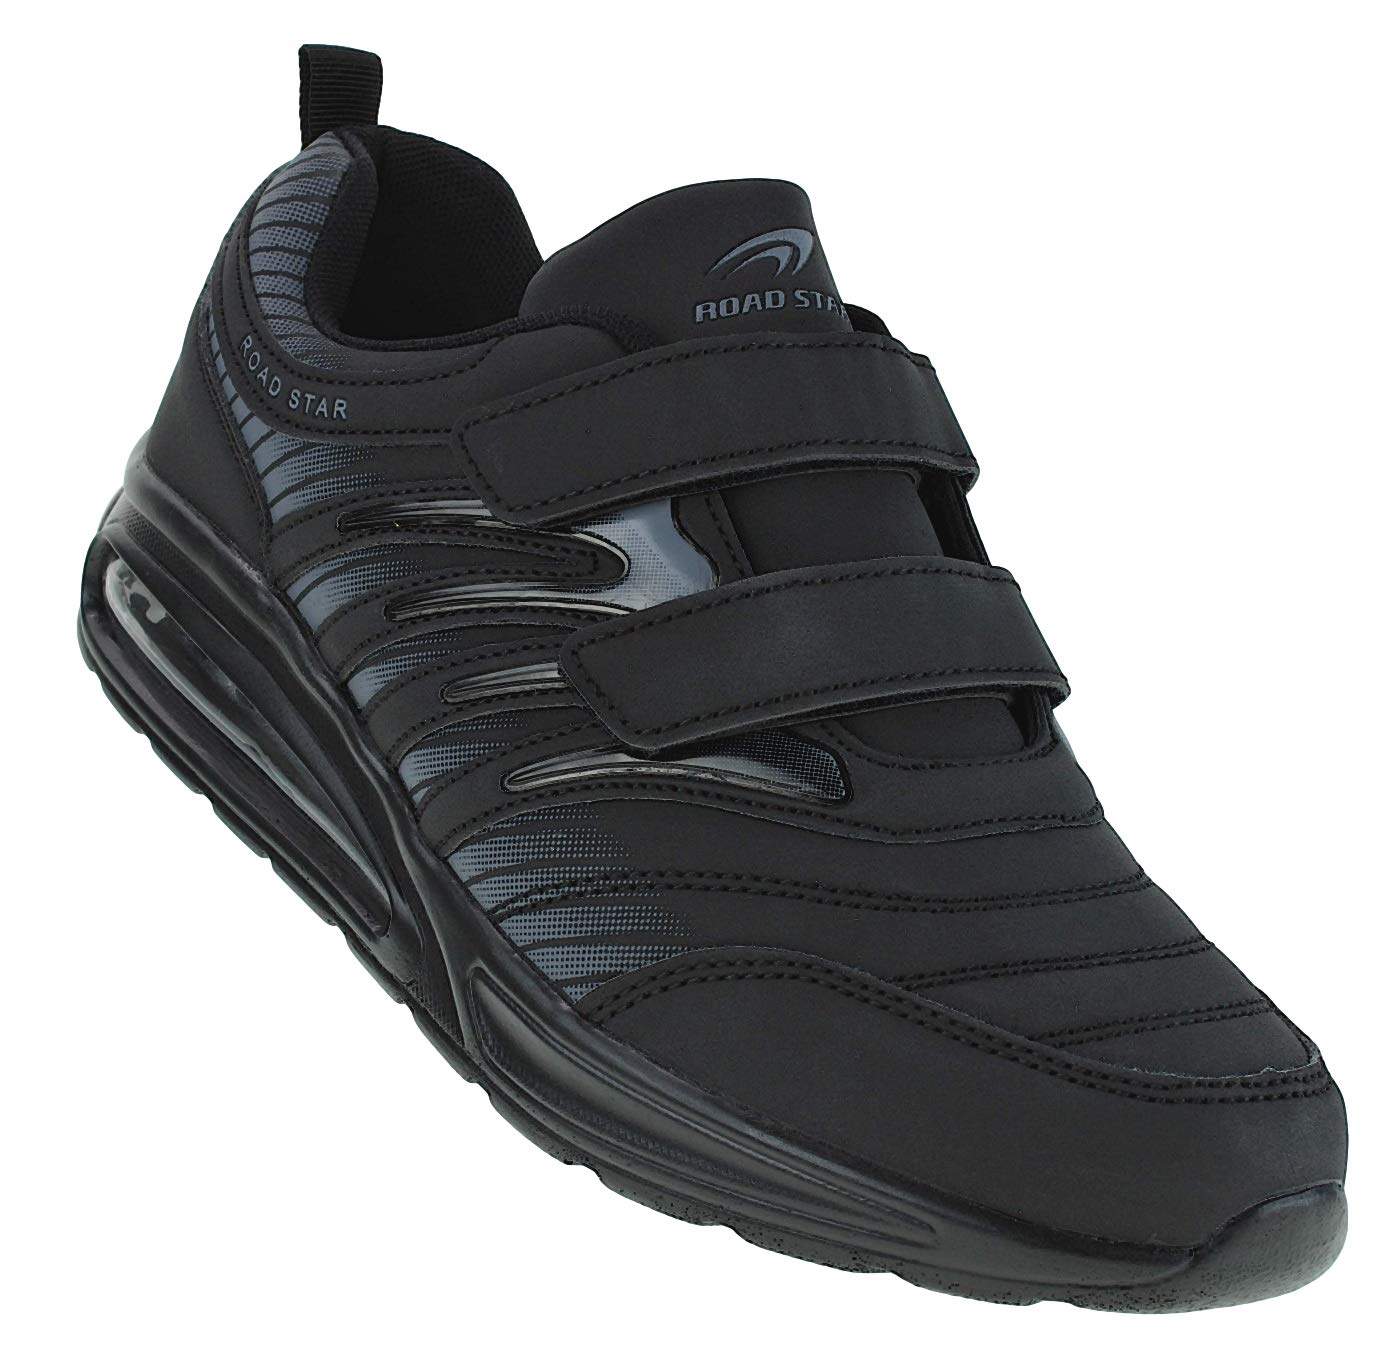 Bootsland Unisex Klett Sportschuhe Sneaker Turnschuhe Freizeitschuhe 001, Schuhgröße:43, Farbe:Schwarz